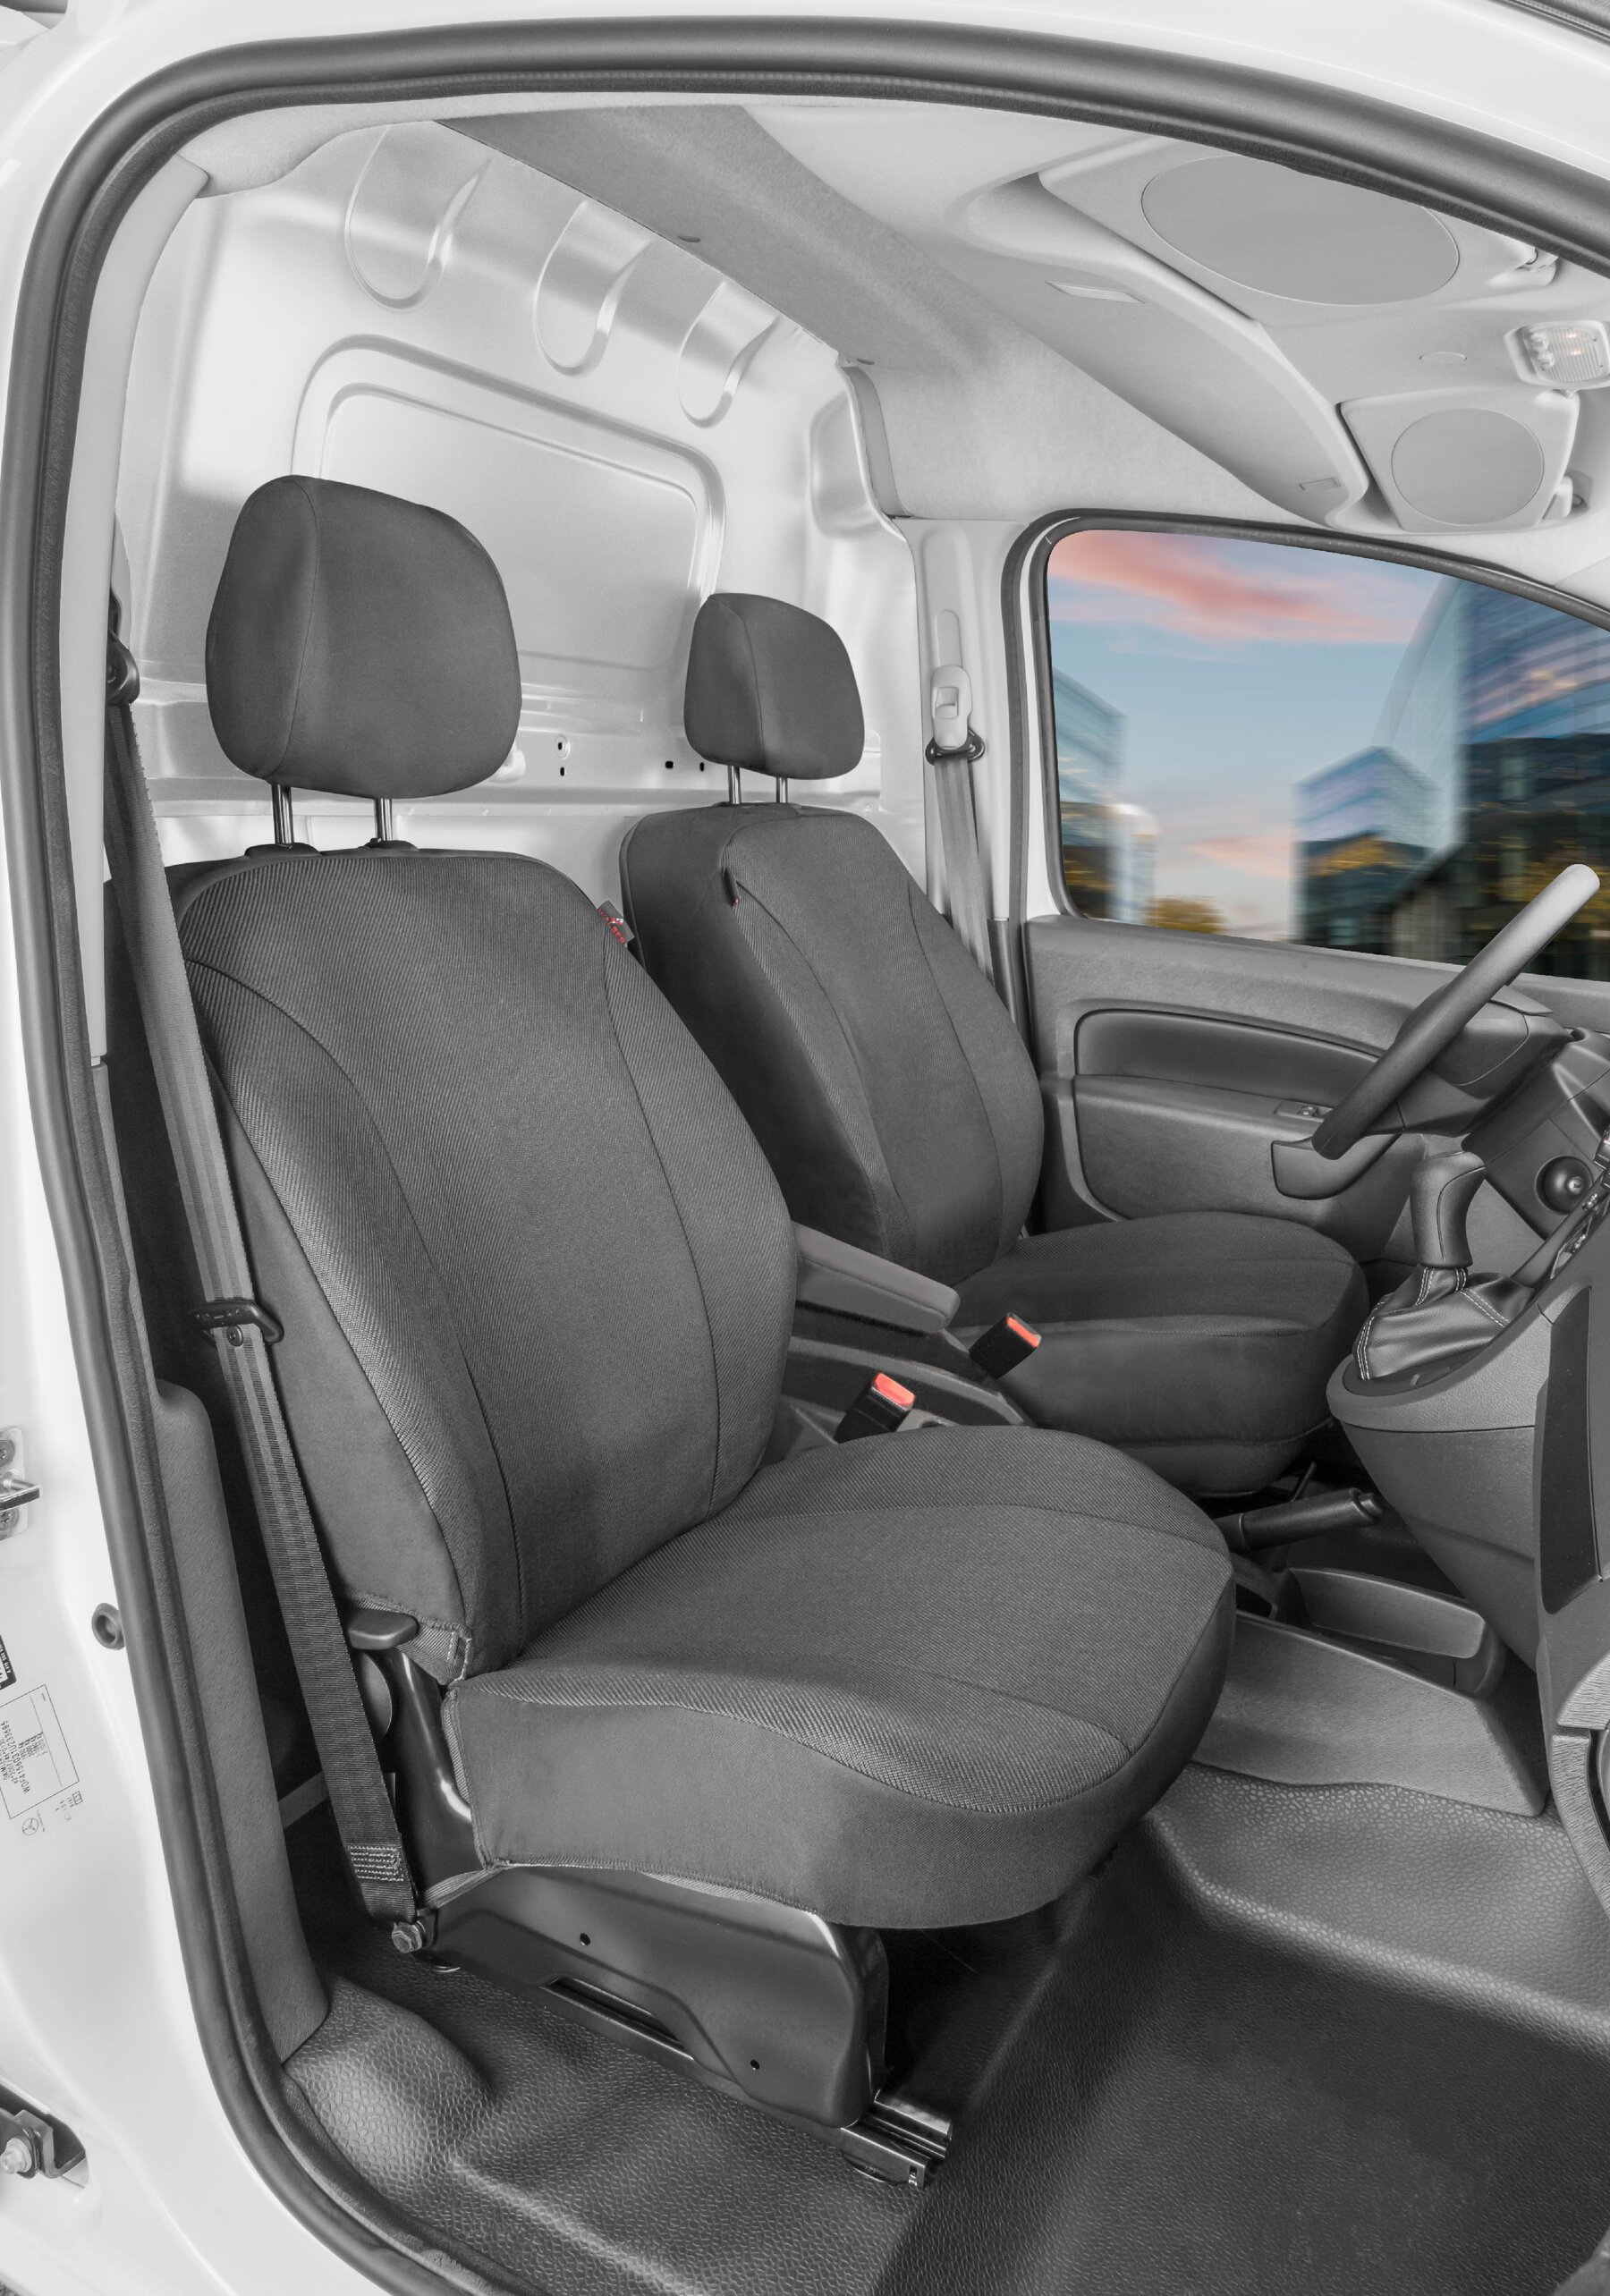 Passform Sitzbezug aus Stoff kompatibel mit Ford Transit Courier 2, 2 Einzelsitze vorne